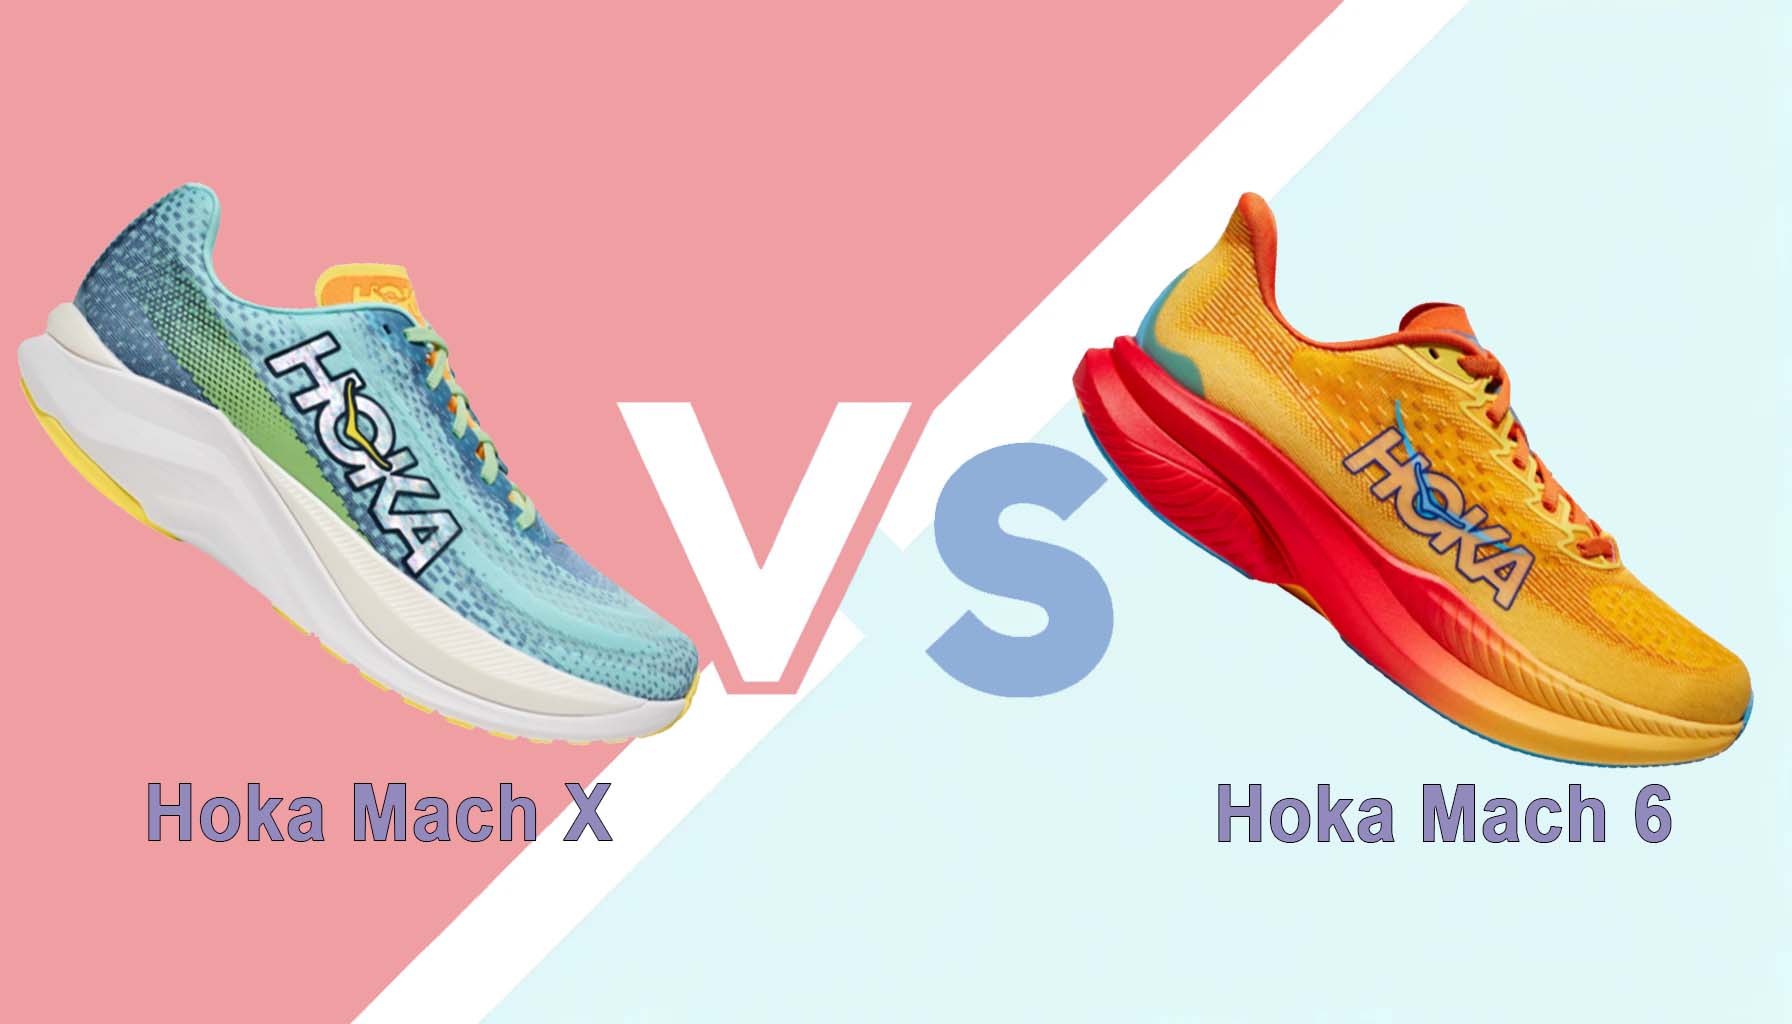 Comparativa: Hoka Mach X Vs Hoka Mach 6